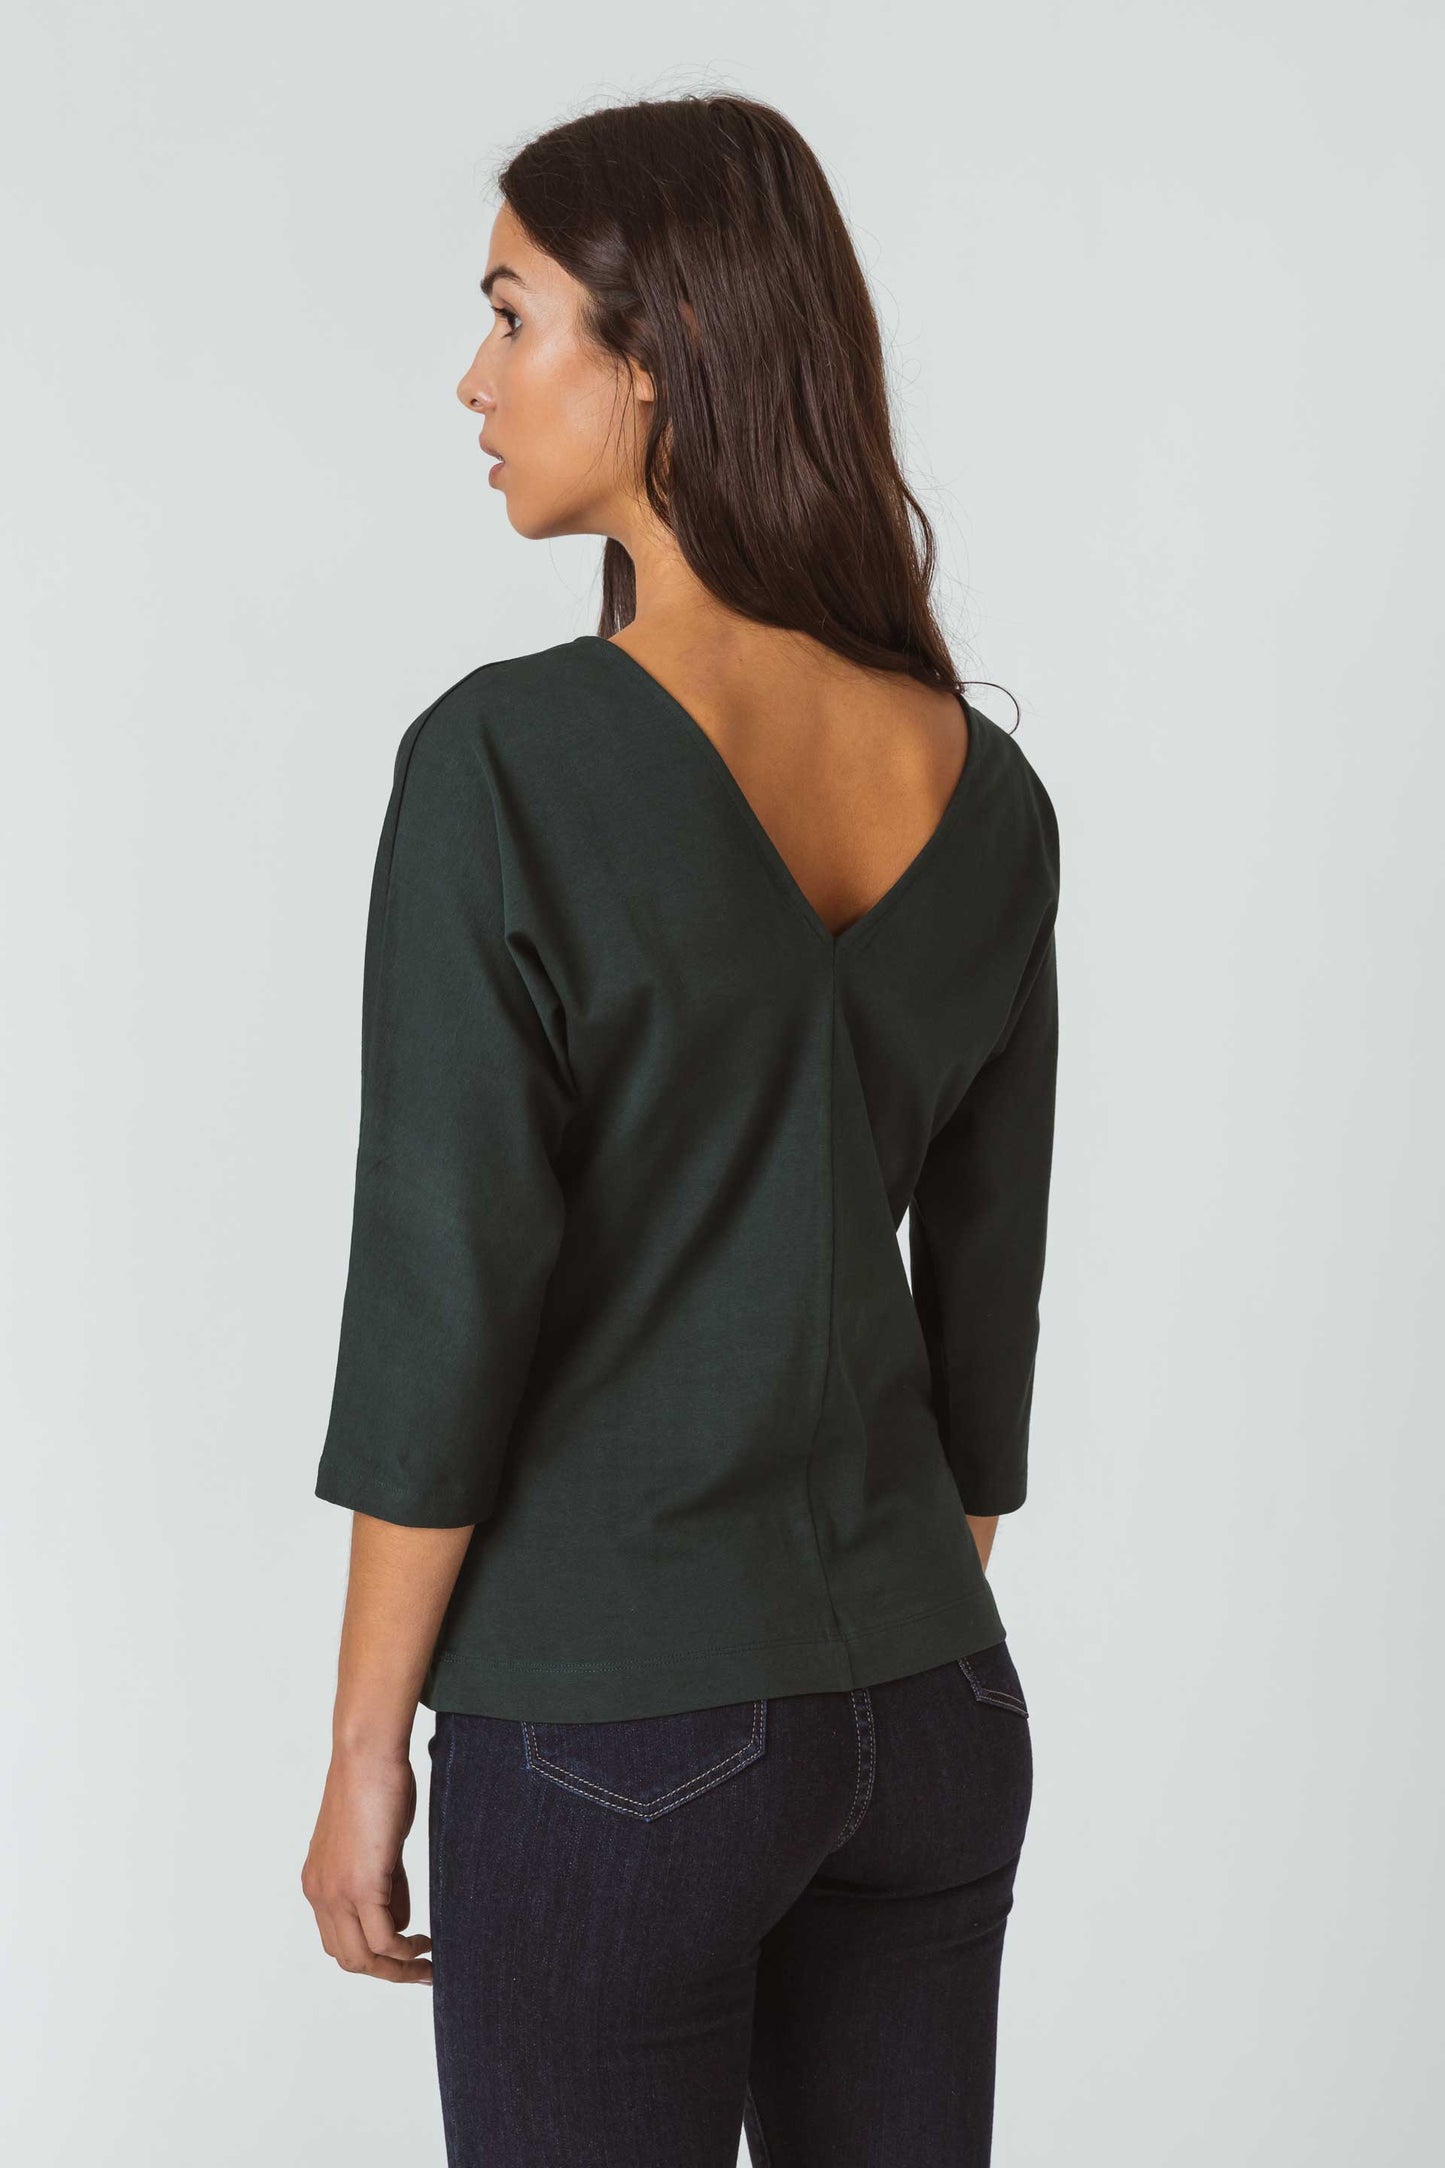 SKFK ARAZELI Kurzärmeliges Oberteil aus dehnbarer Bio-Baumwolle, mit V-Ausschnitt und schicken Knöpfen. Dunkelgrün. (Women T-Shirt Dark Green)